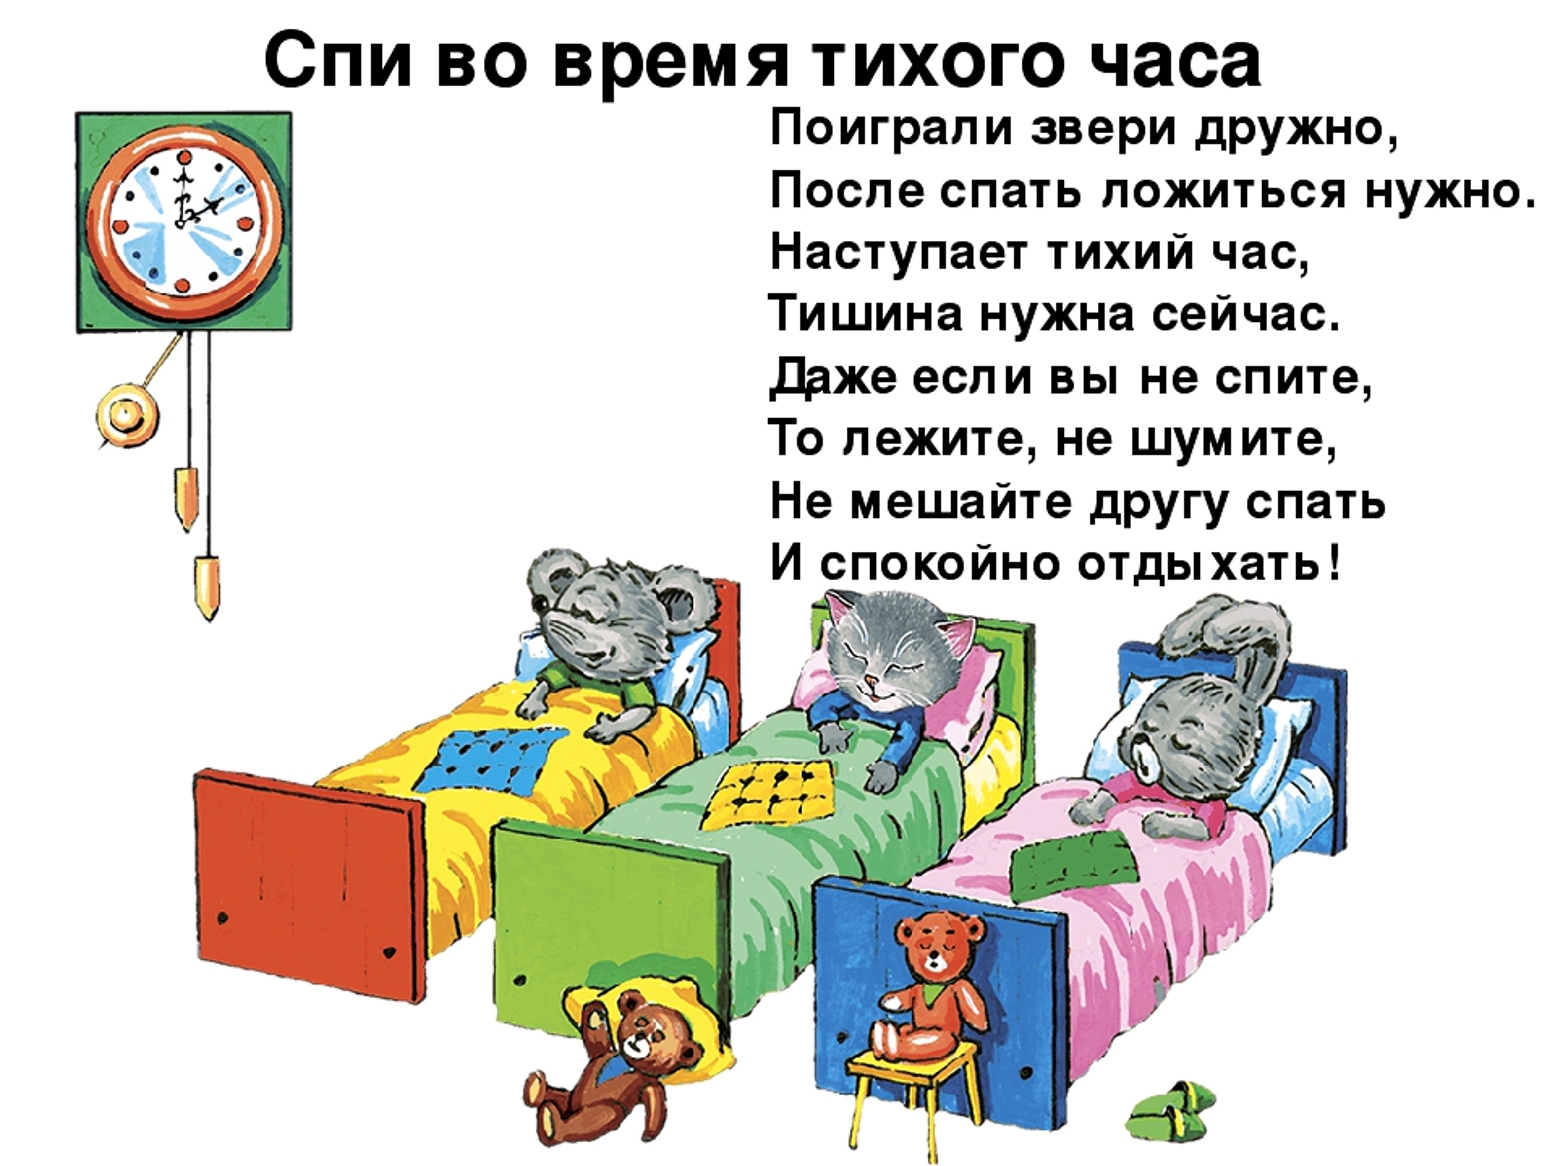 Игры время спать. Стих про тихий час. Правила поведения в спальне в детском саду. Тихий час стихи для детей. Дети в детском саду тихий час.